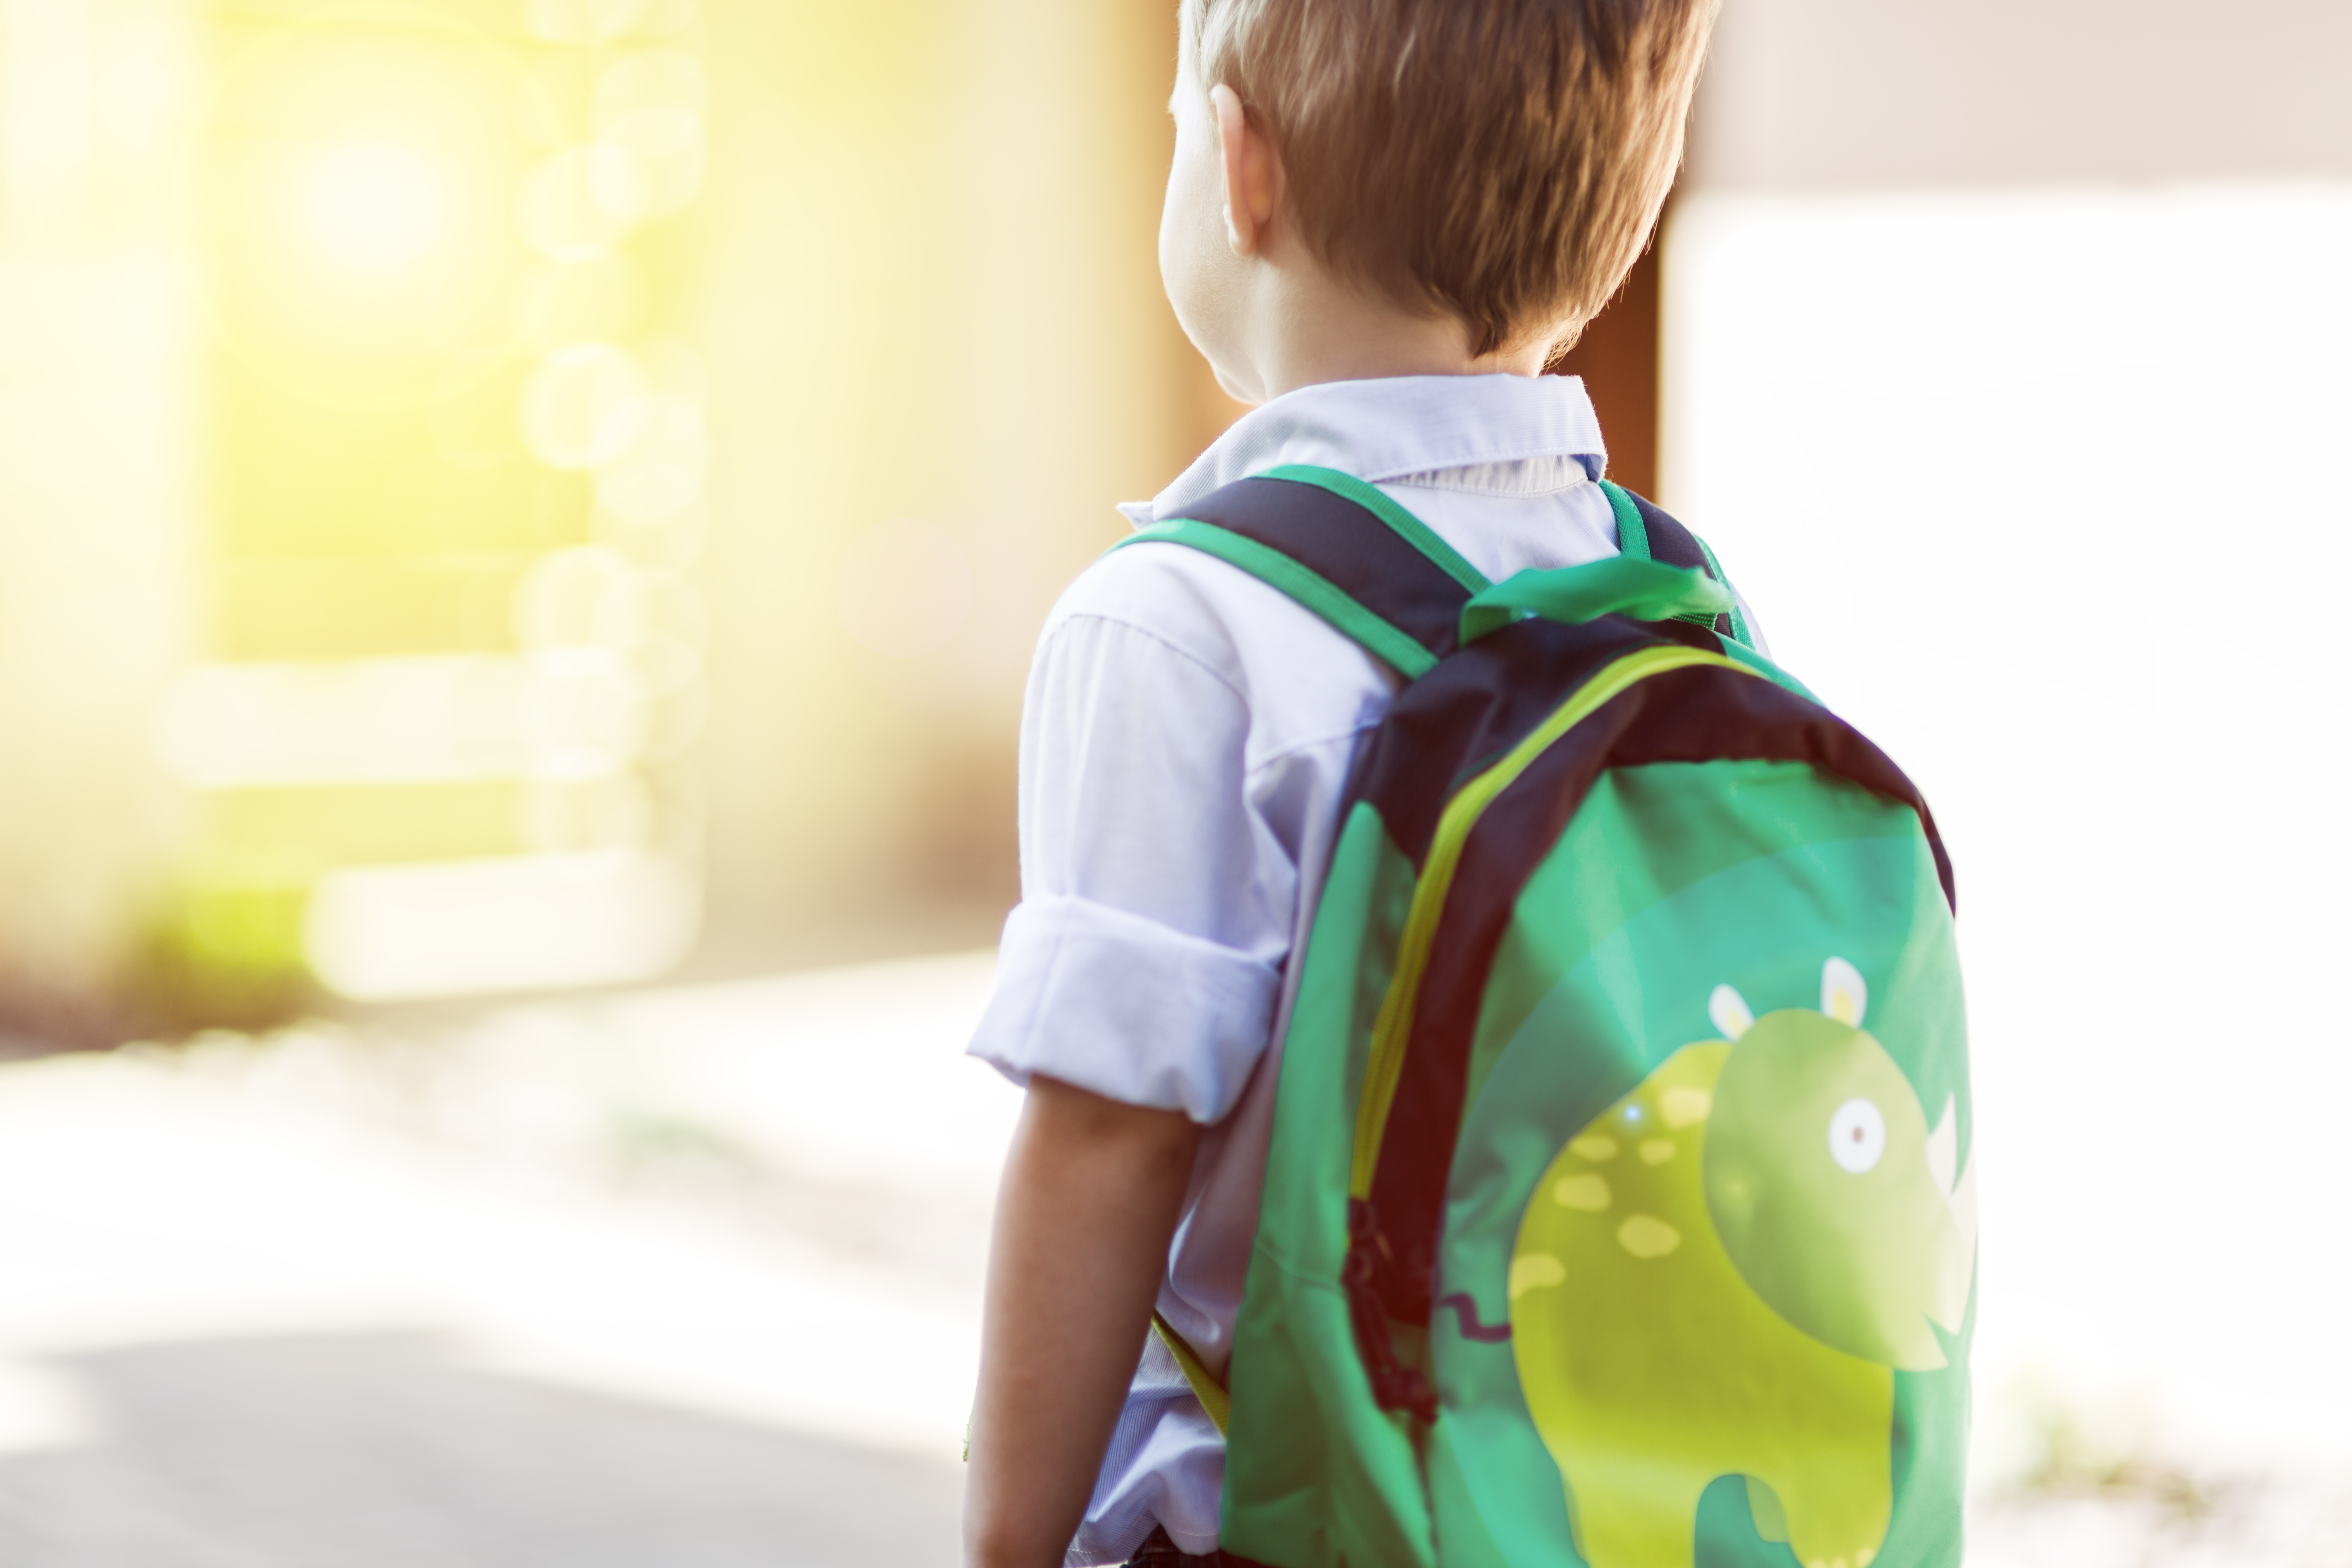 Kindergarten school boy with green backpack